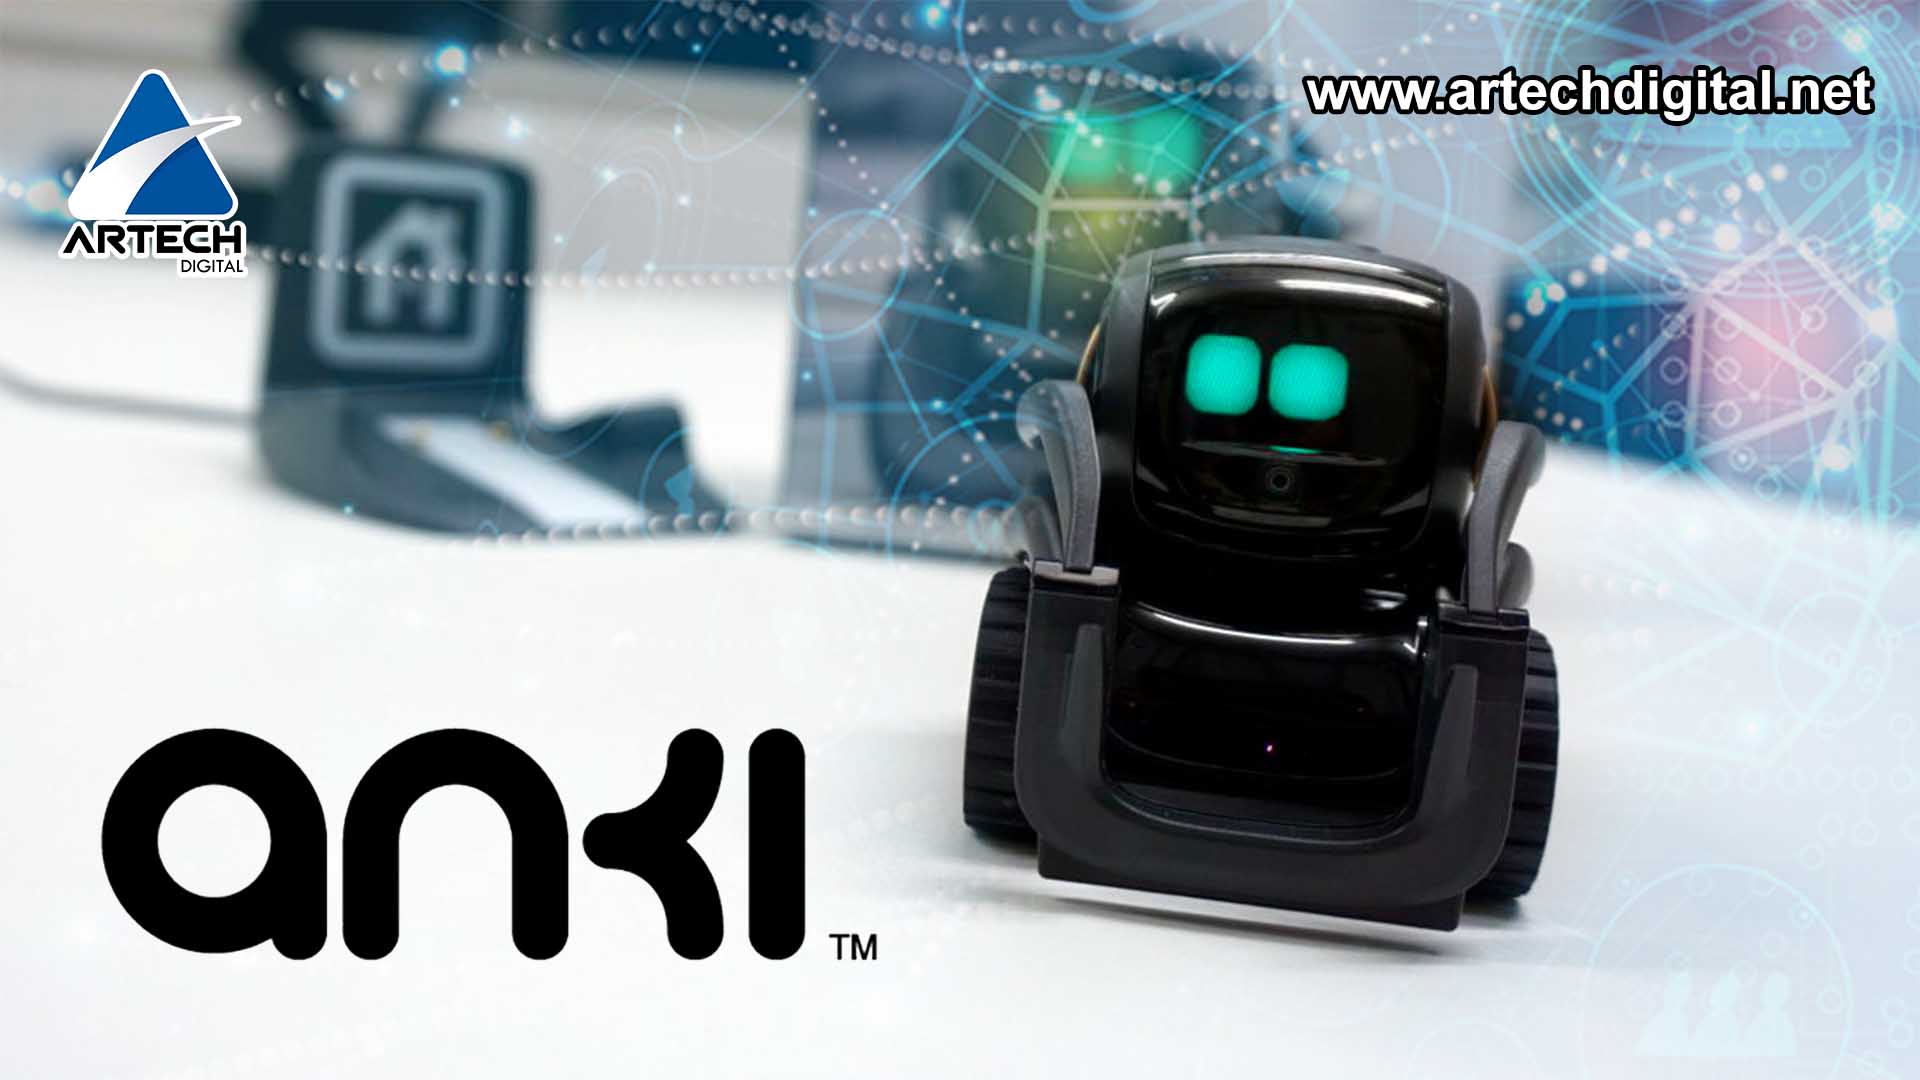 ¡Todo en uno¡ Anki Vector el mini robot que charla, toma fotos y se auto recarga